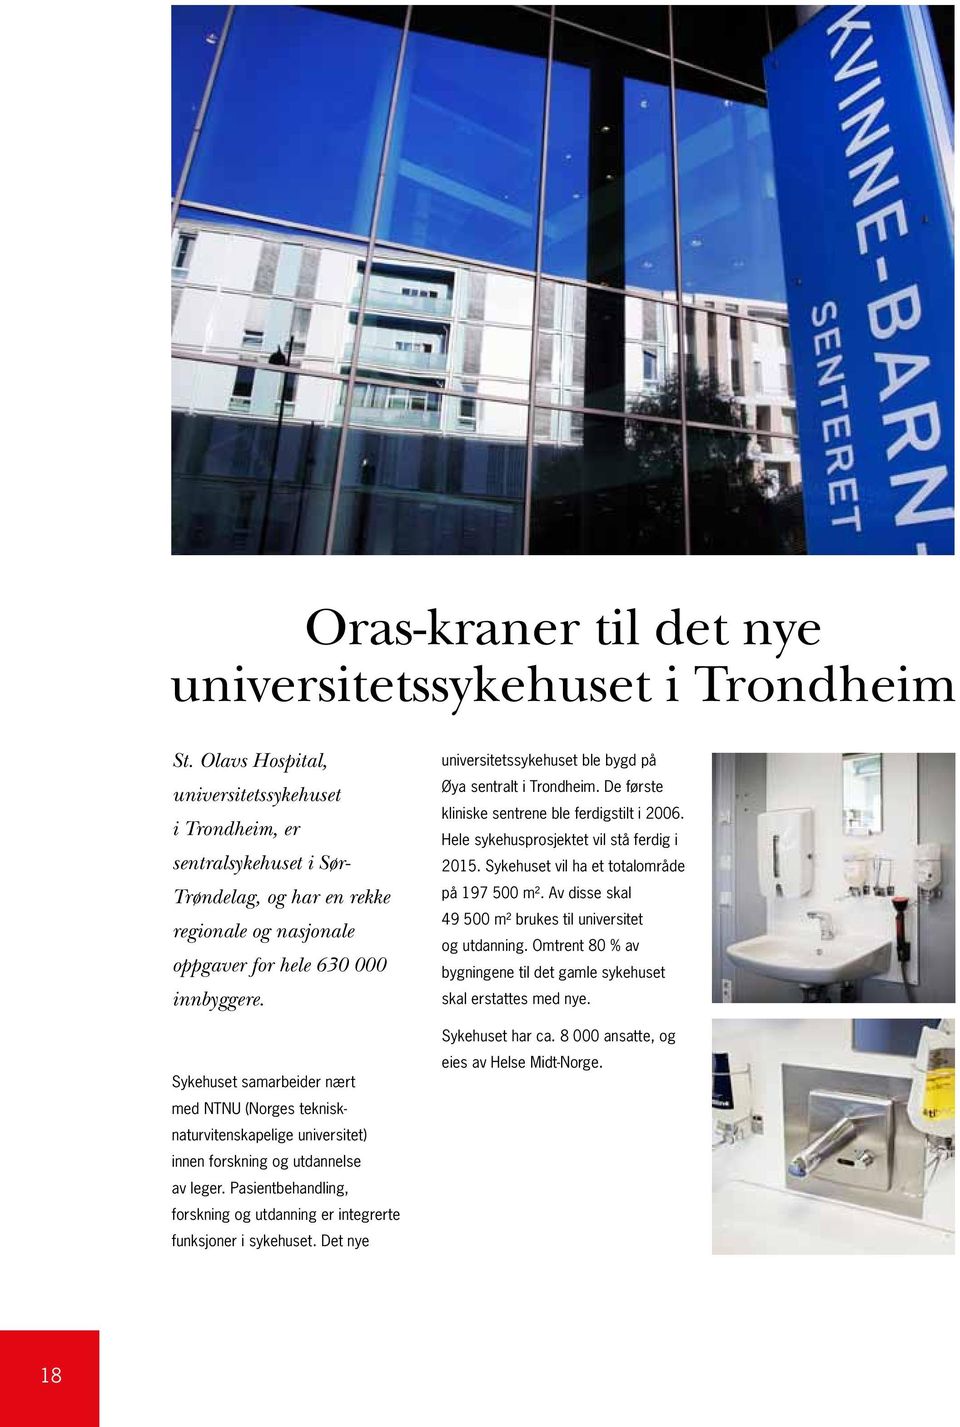 Sykehuset samarbeider nært med NTNU (Norges teknisknaturvitenskapelige universitet) innen forskning og utdannelse av leger.